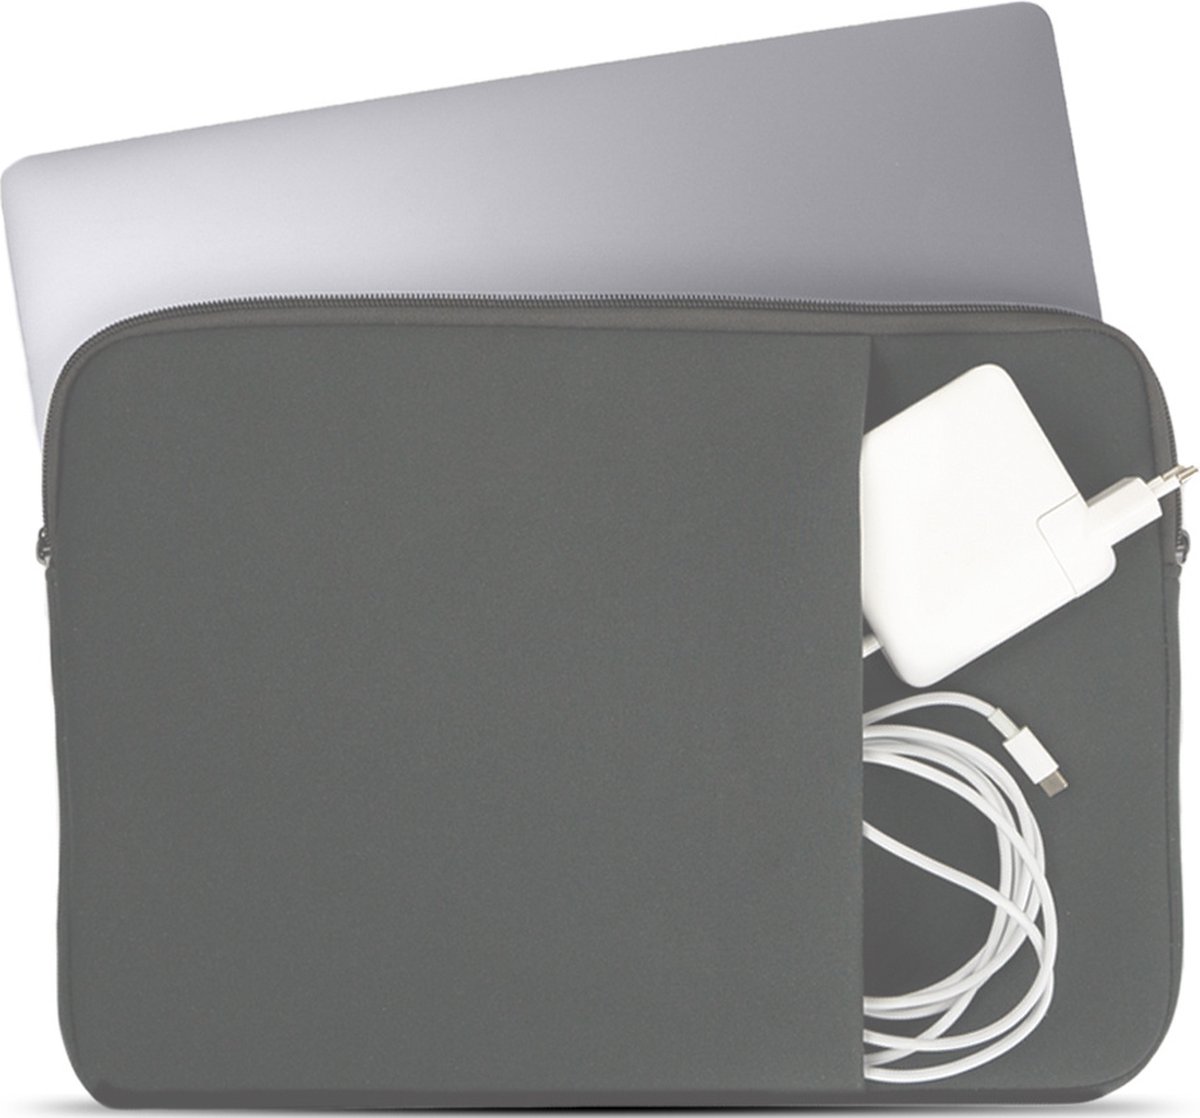 Coverzs Laptophoes 14 inch & 15 6 inch (grijs) - Laptoptas dames / heren geschikt voor o.a. 15 6 inch laptop en 14 Inch laptop - Macbook hoes met ritssluiting - waterafstotende hoes